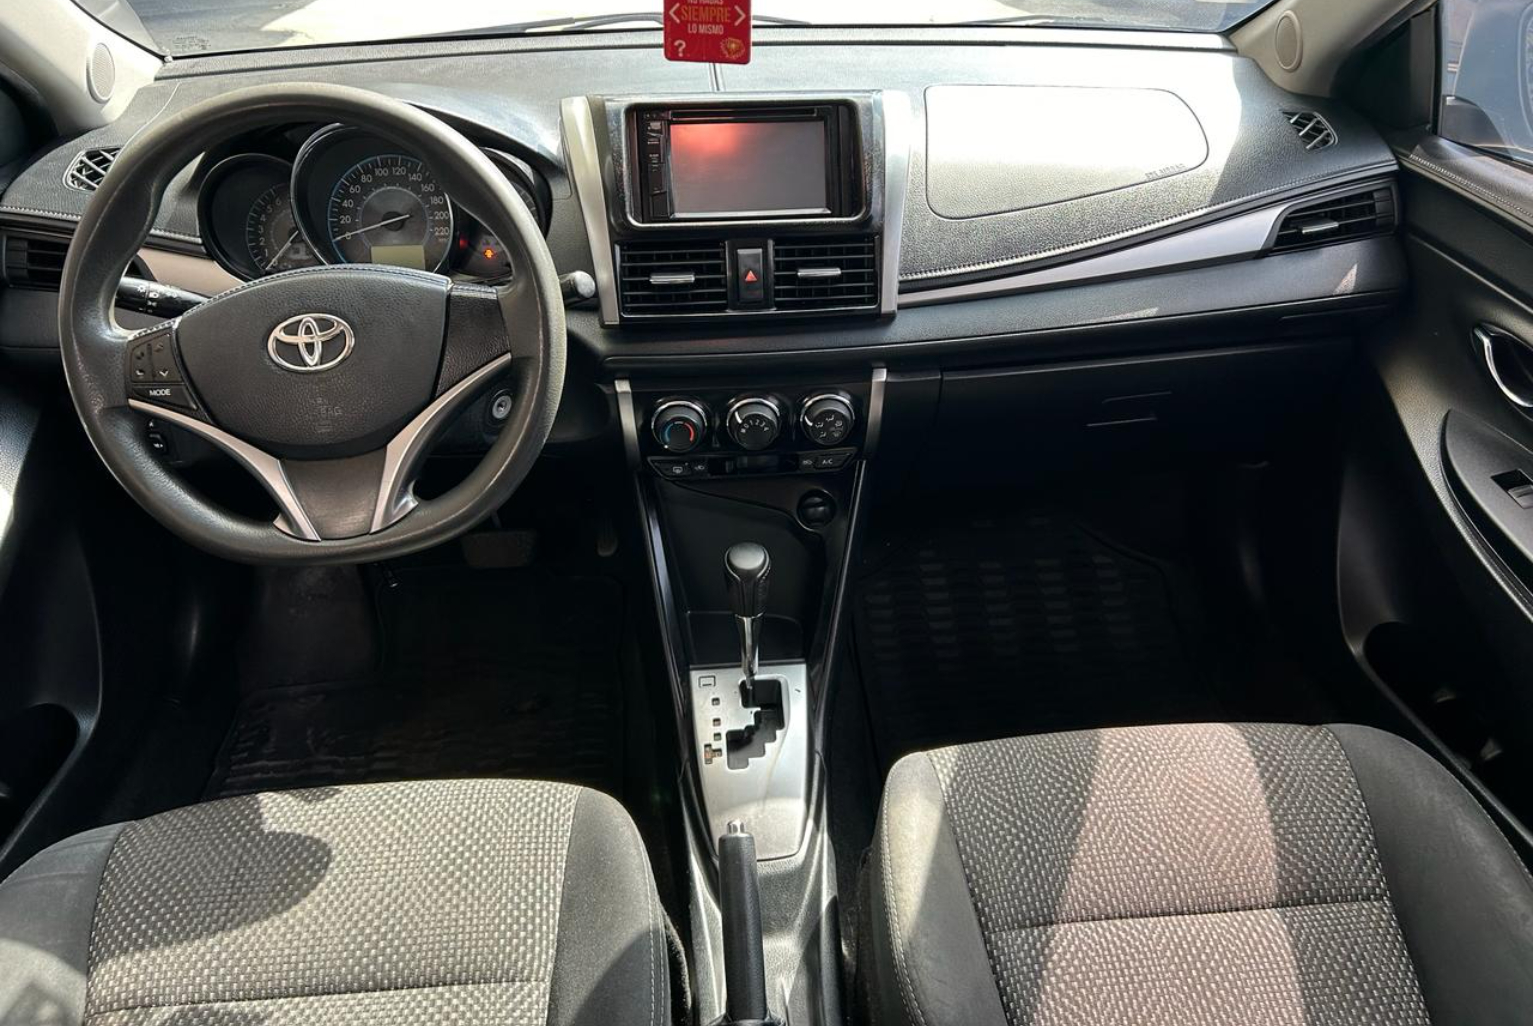 Toyota Yaris 2017 Automático color Beige, Imagen #9